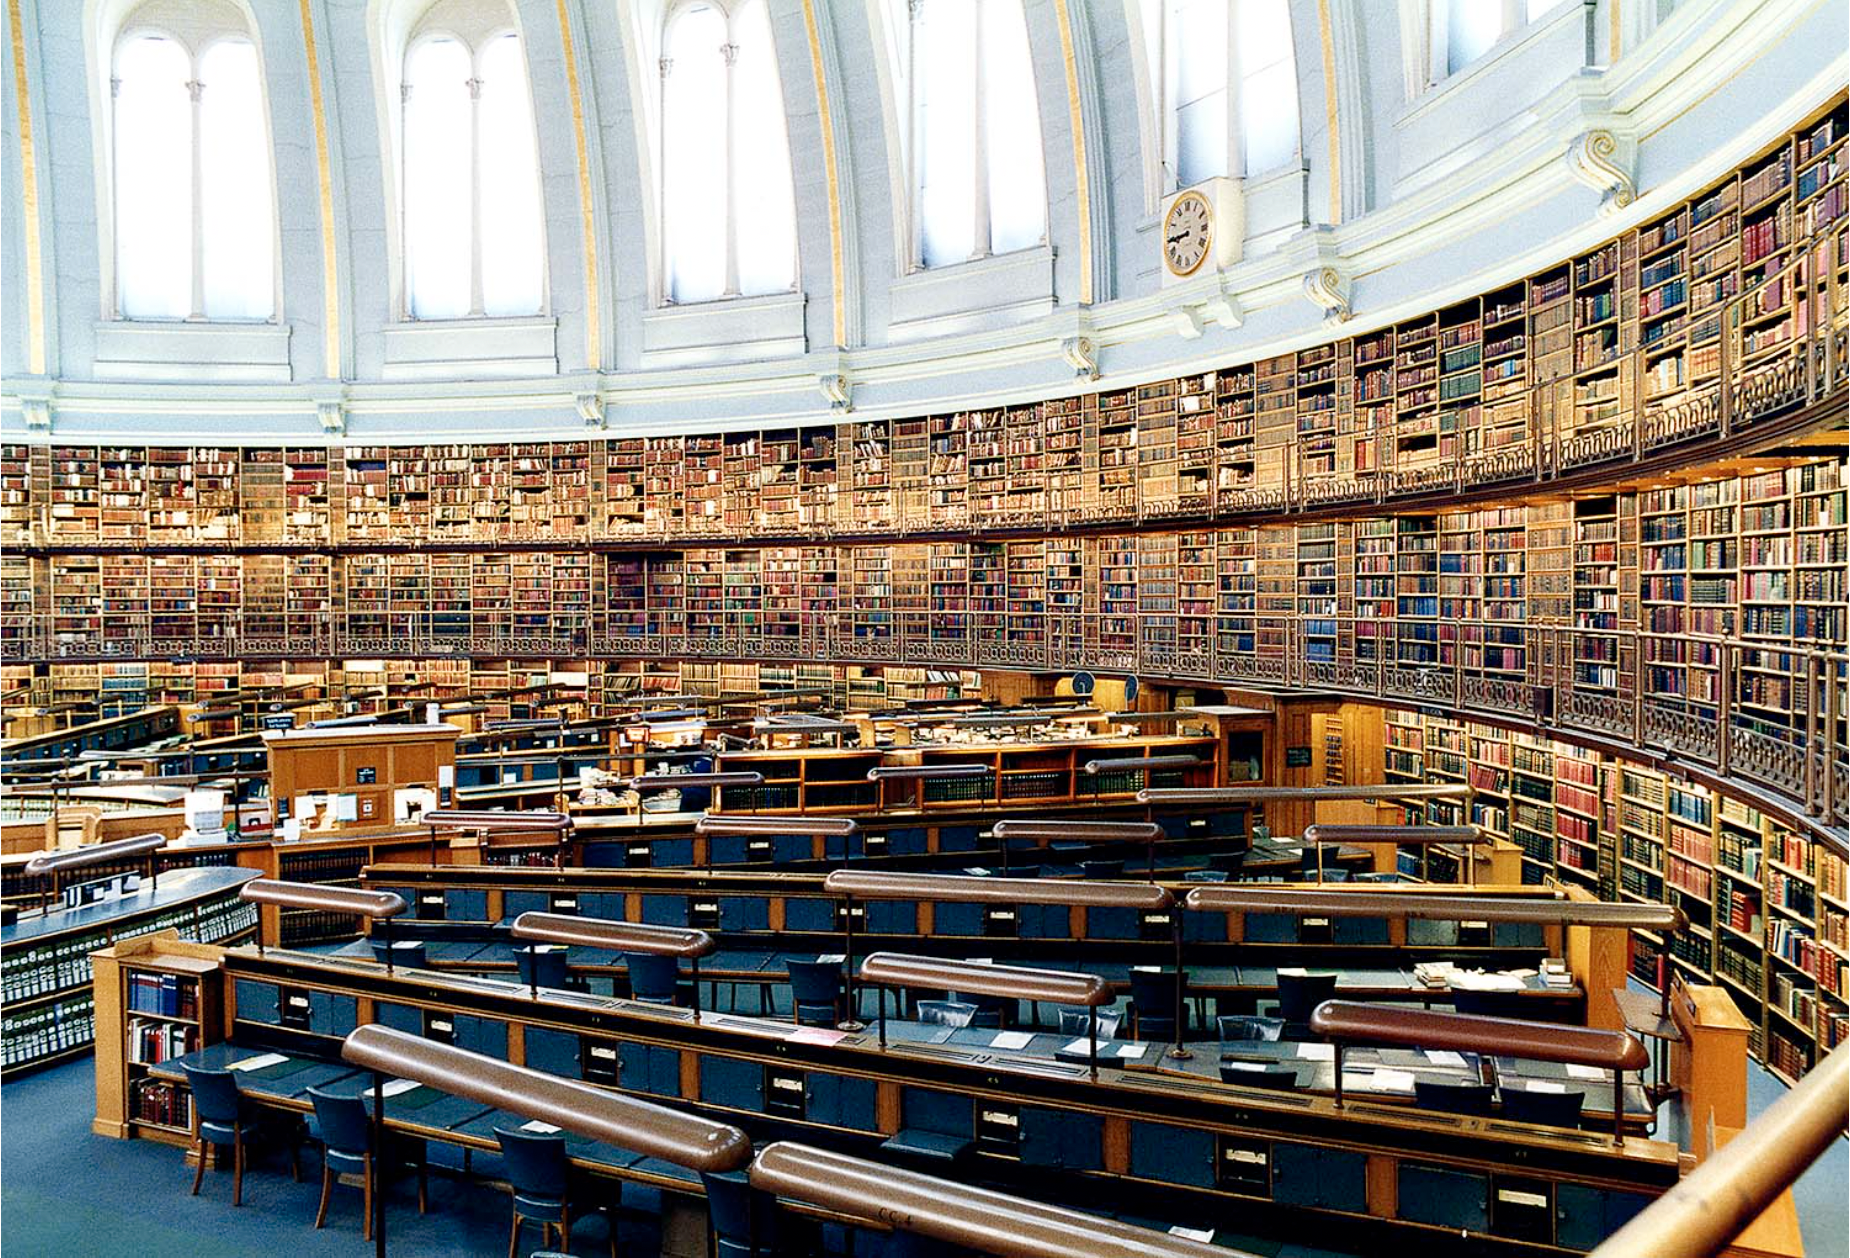 Car library. Библиотека британского музея в Лондоне. Британский музей Лондон читательный зал. Национальная библиотека Великобритании книгохранилище. Британская библиотека (British Library).